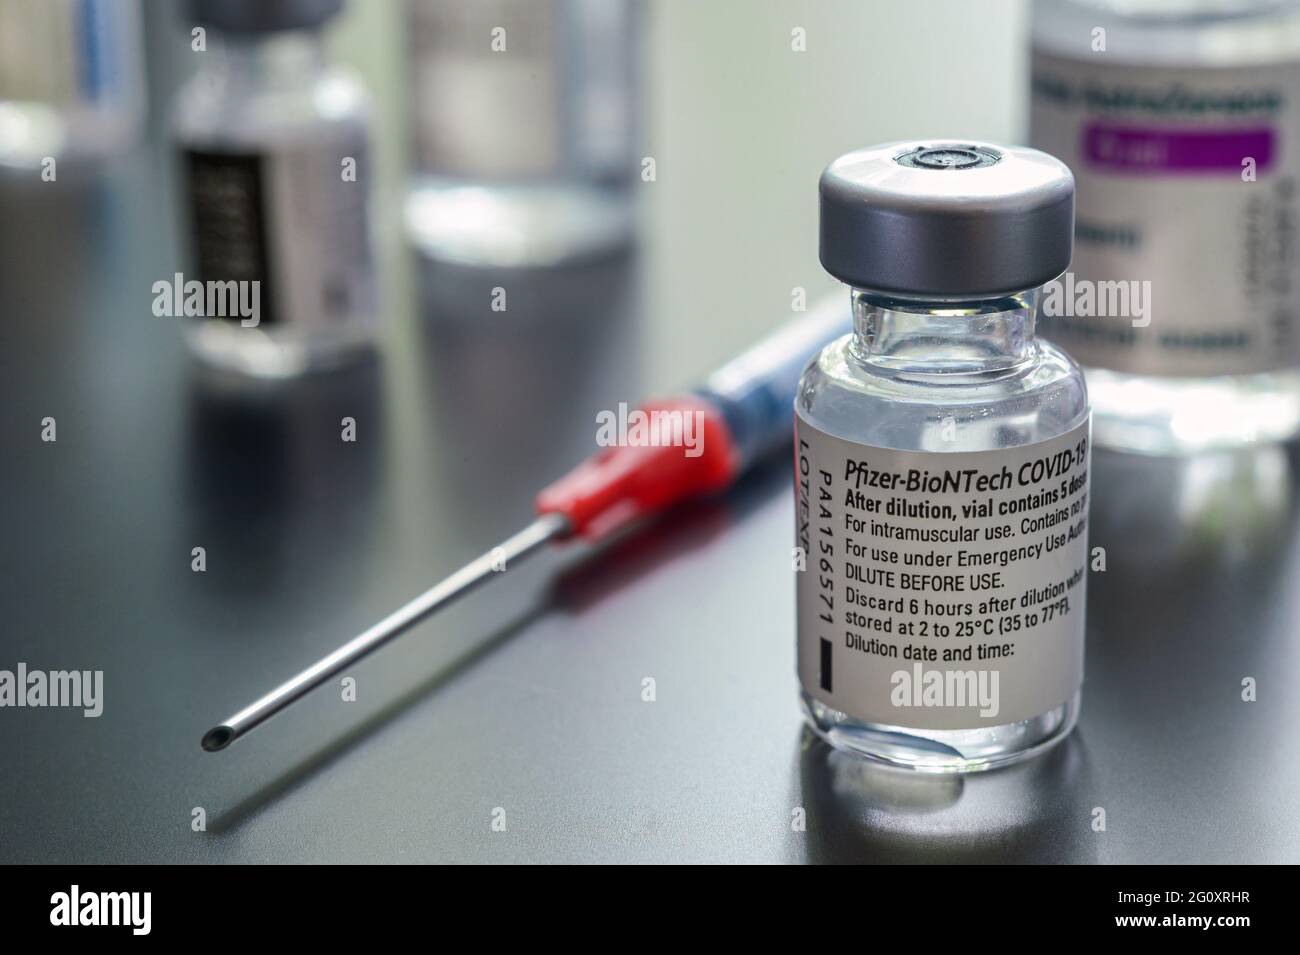 Montréal, CA - 3 juin 2021 : flacon du vaccin Pfizer-BioNTech Covid-19 parmi d'autres flacons de vaccin contre le coronavirus Banque D'Images